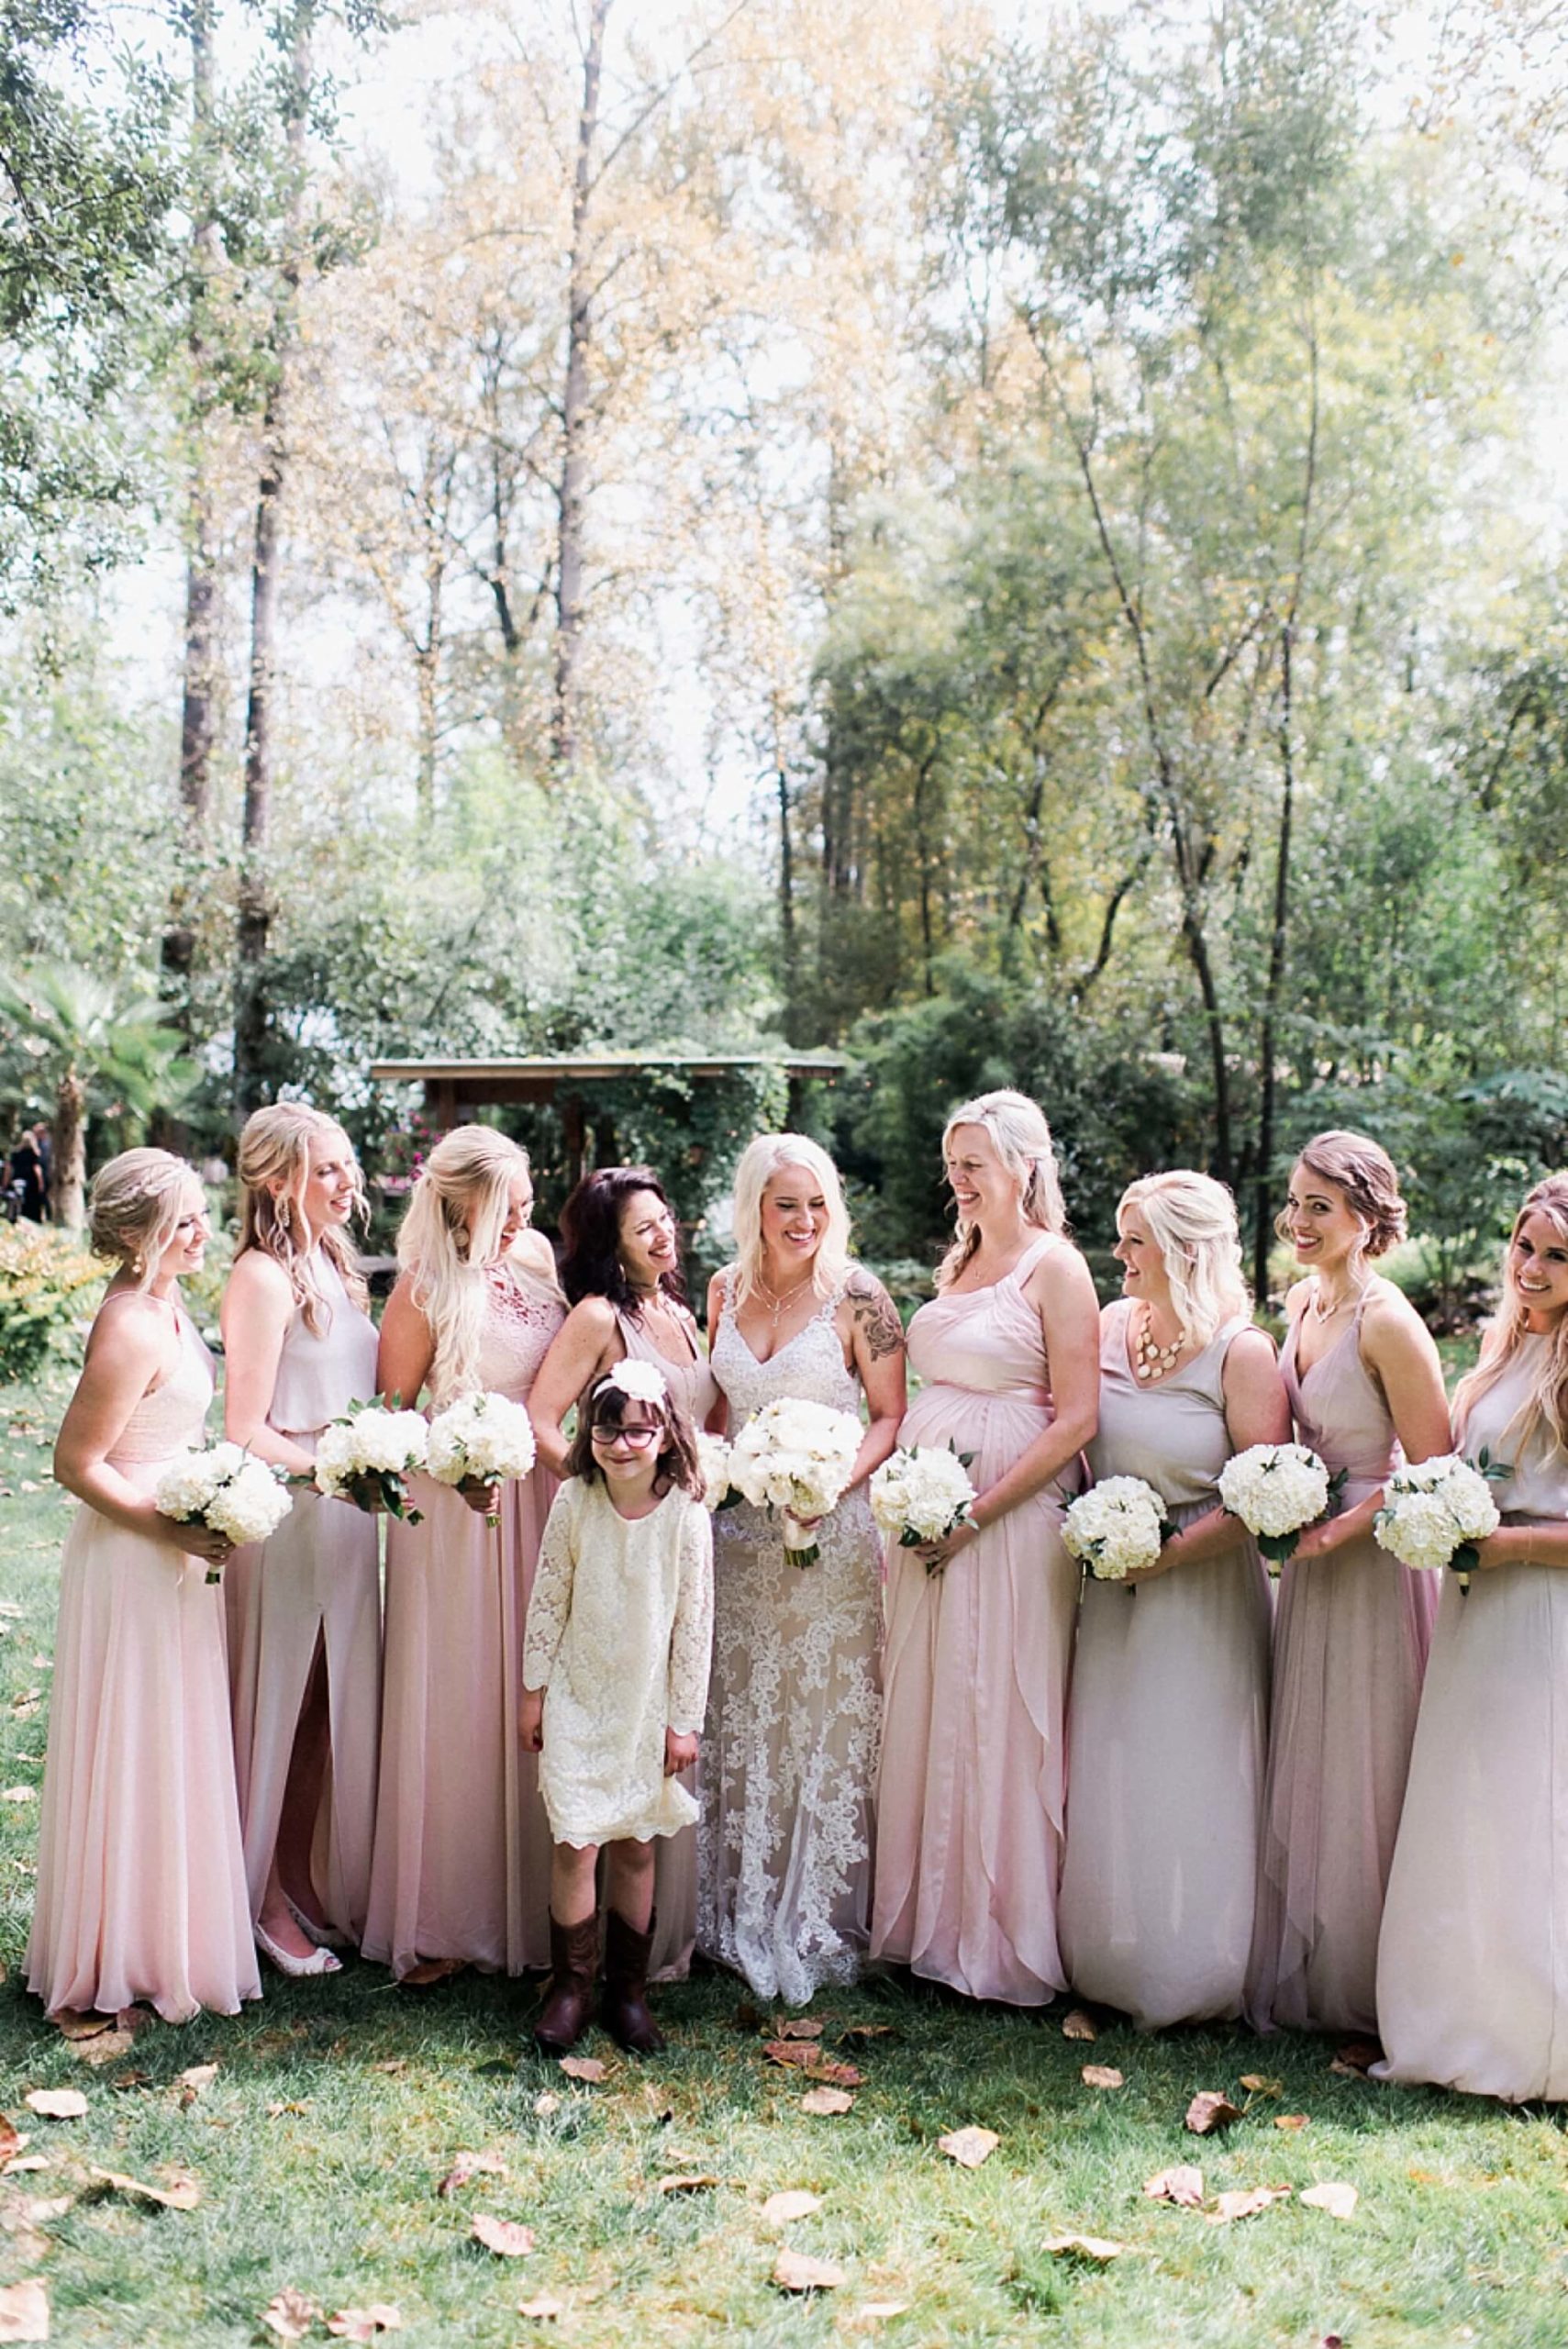 Maroni Meadows bride and bridesmaids